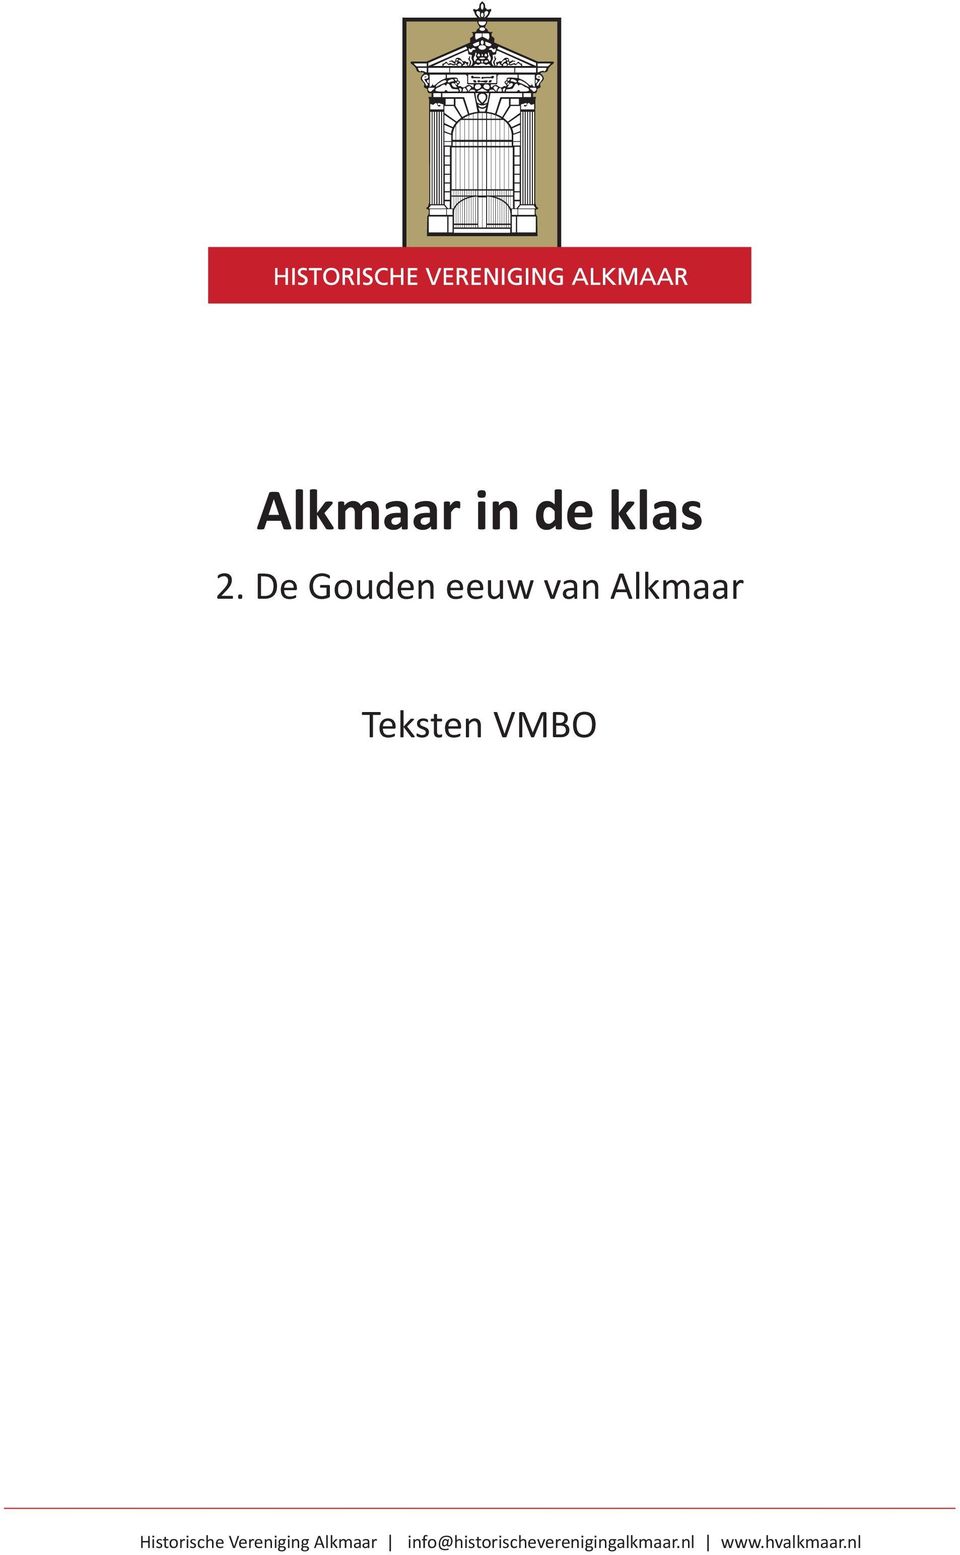 VMBO Historische Vereniging Alkmaar